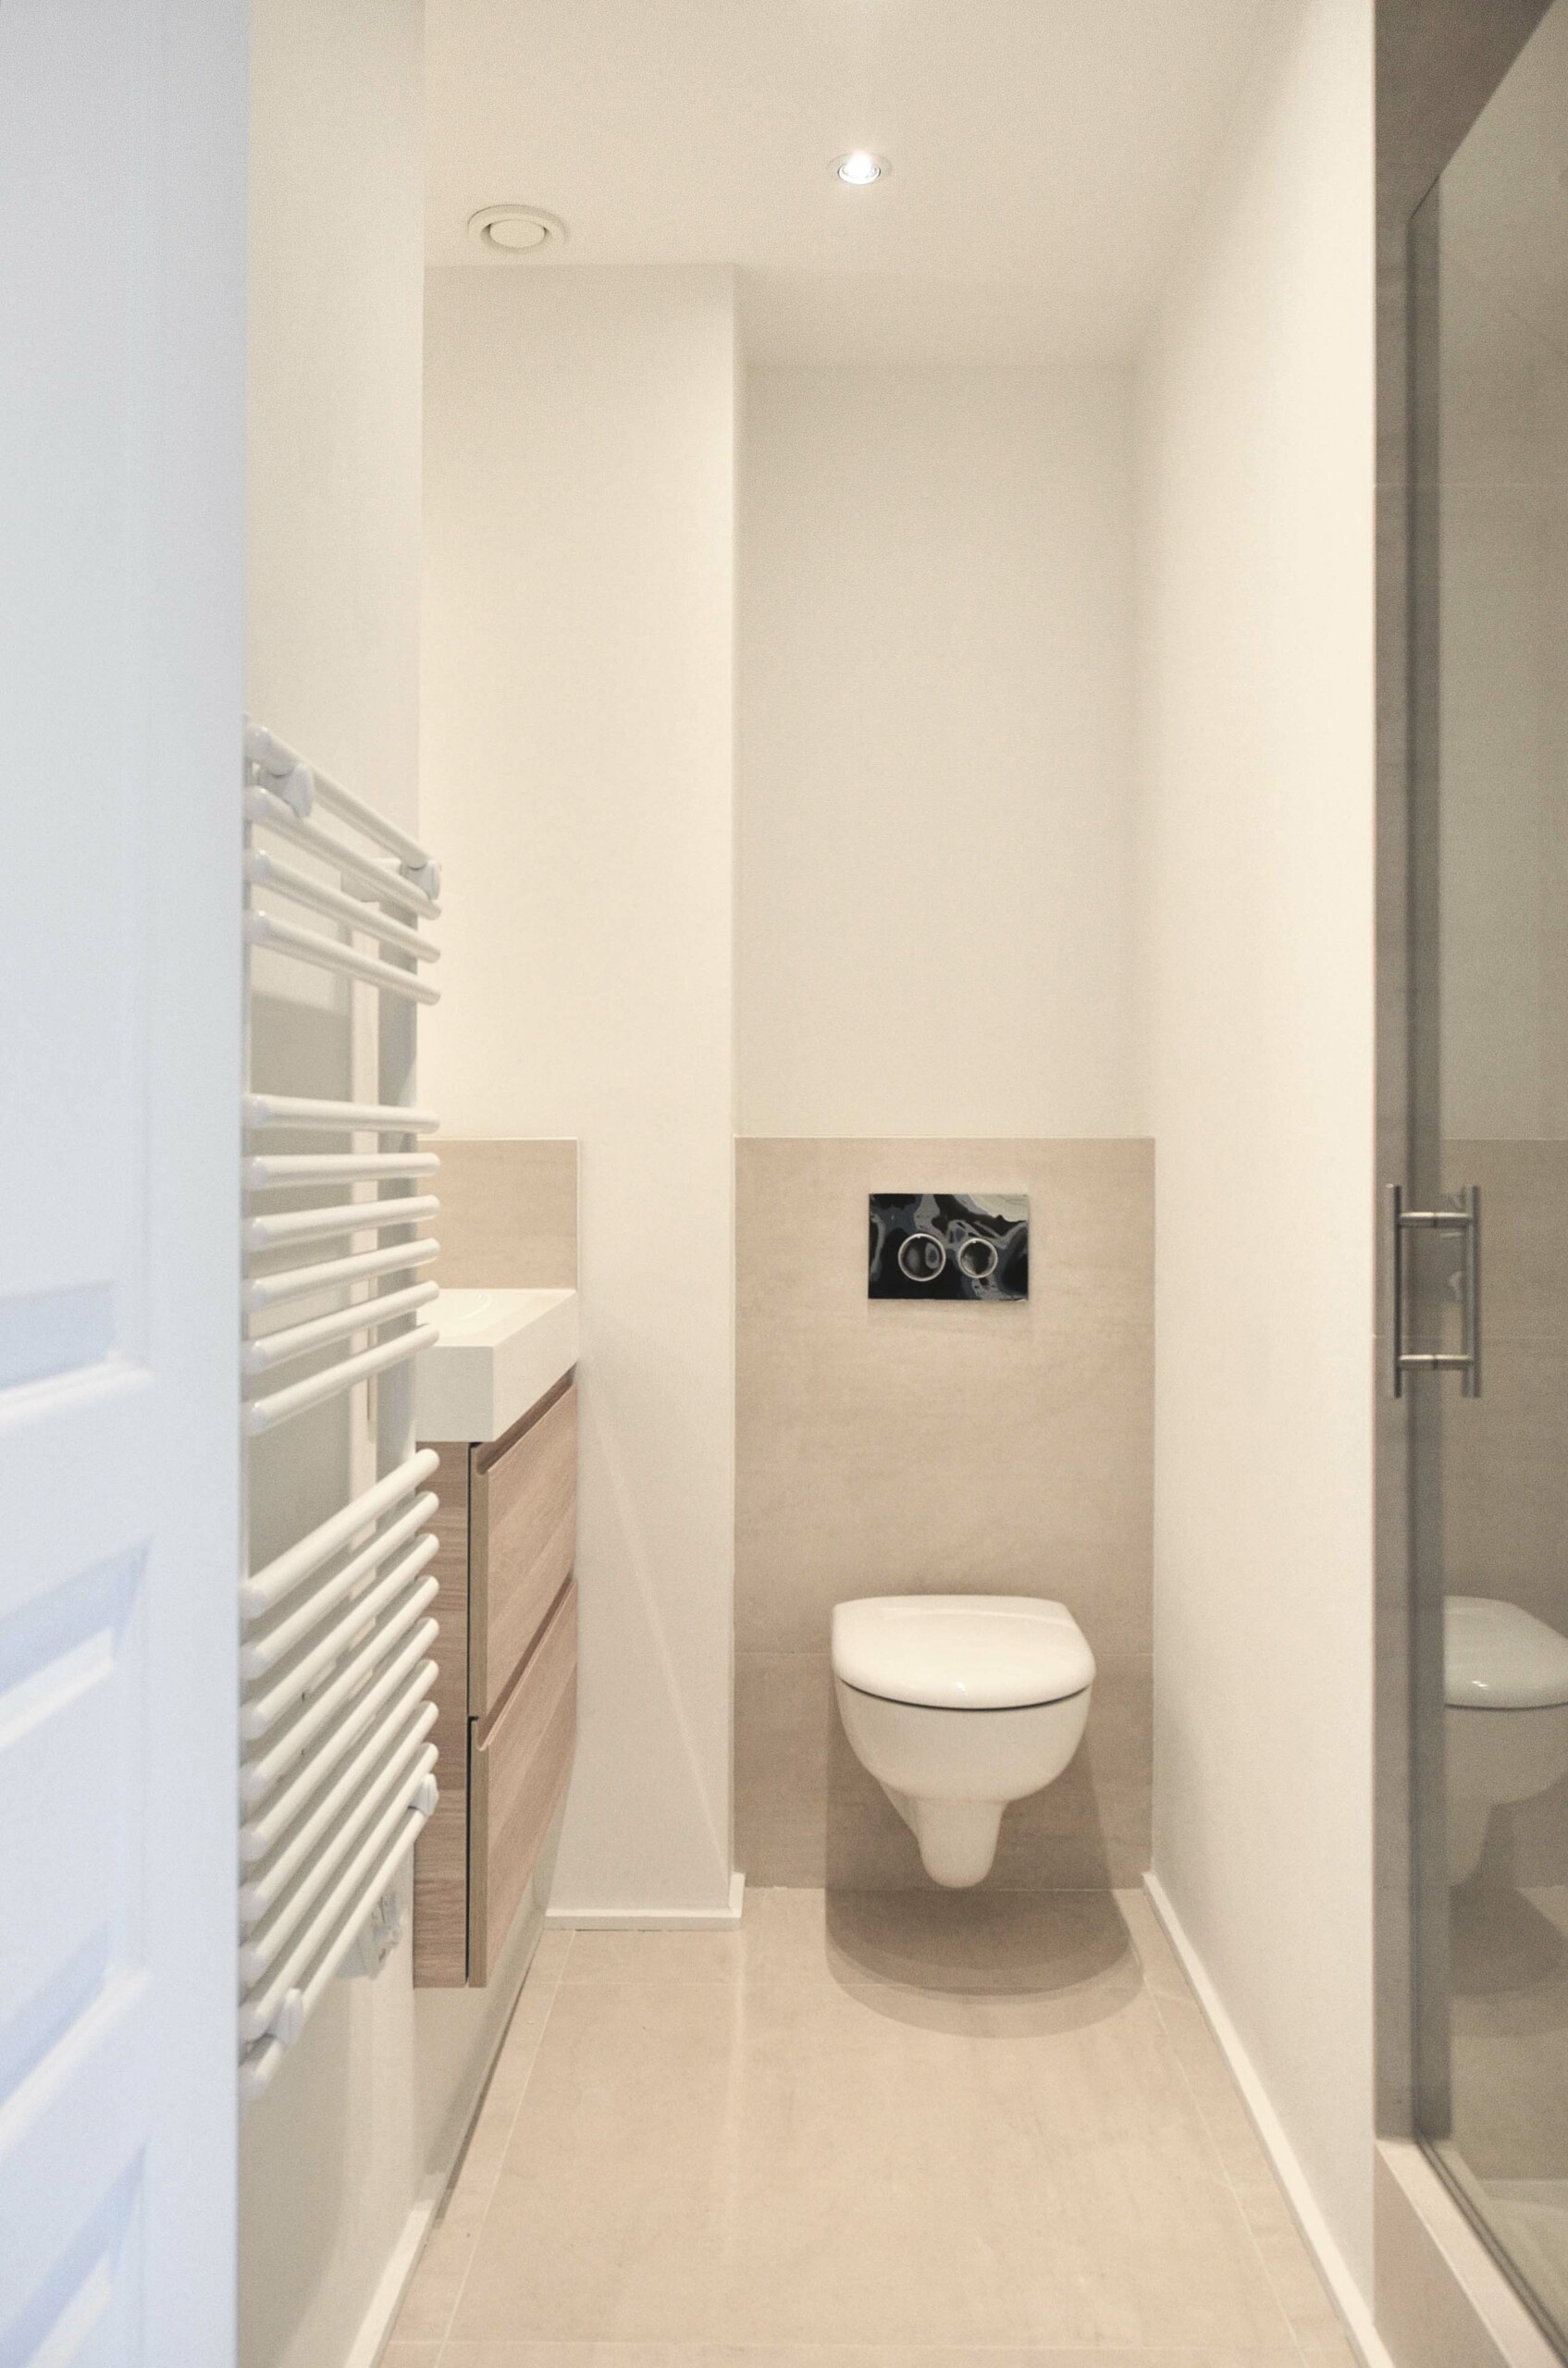 Projet Sully : aménagement d’un studio de 35m² - petite salle de bain, Agence Oz by cath, architecture d'intérieur